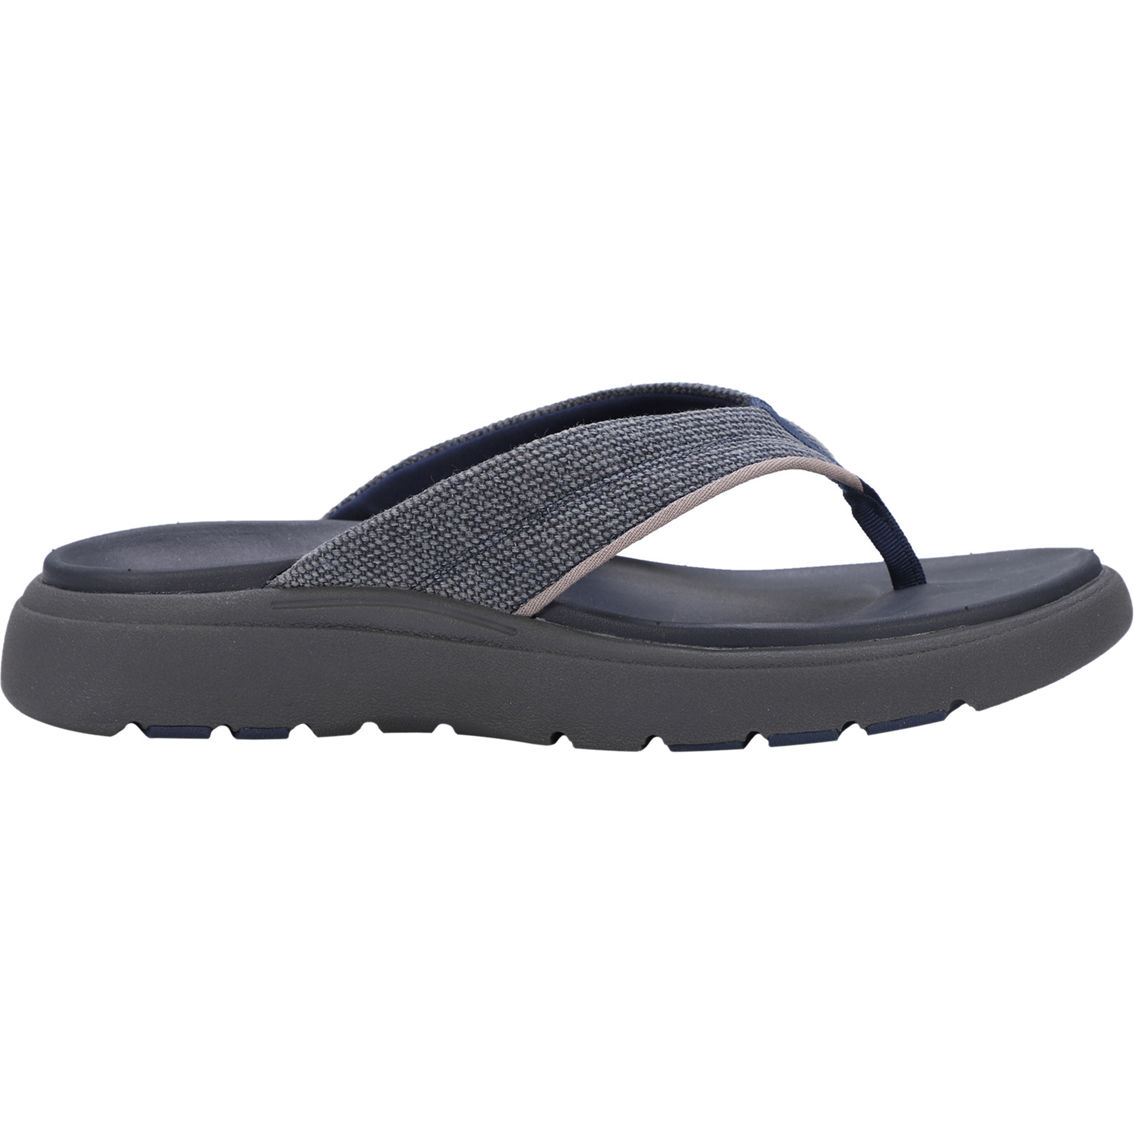 Lamo Lyle Comfort Flip Flop Sandals - Image 2 of 9